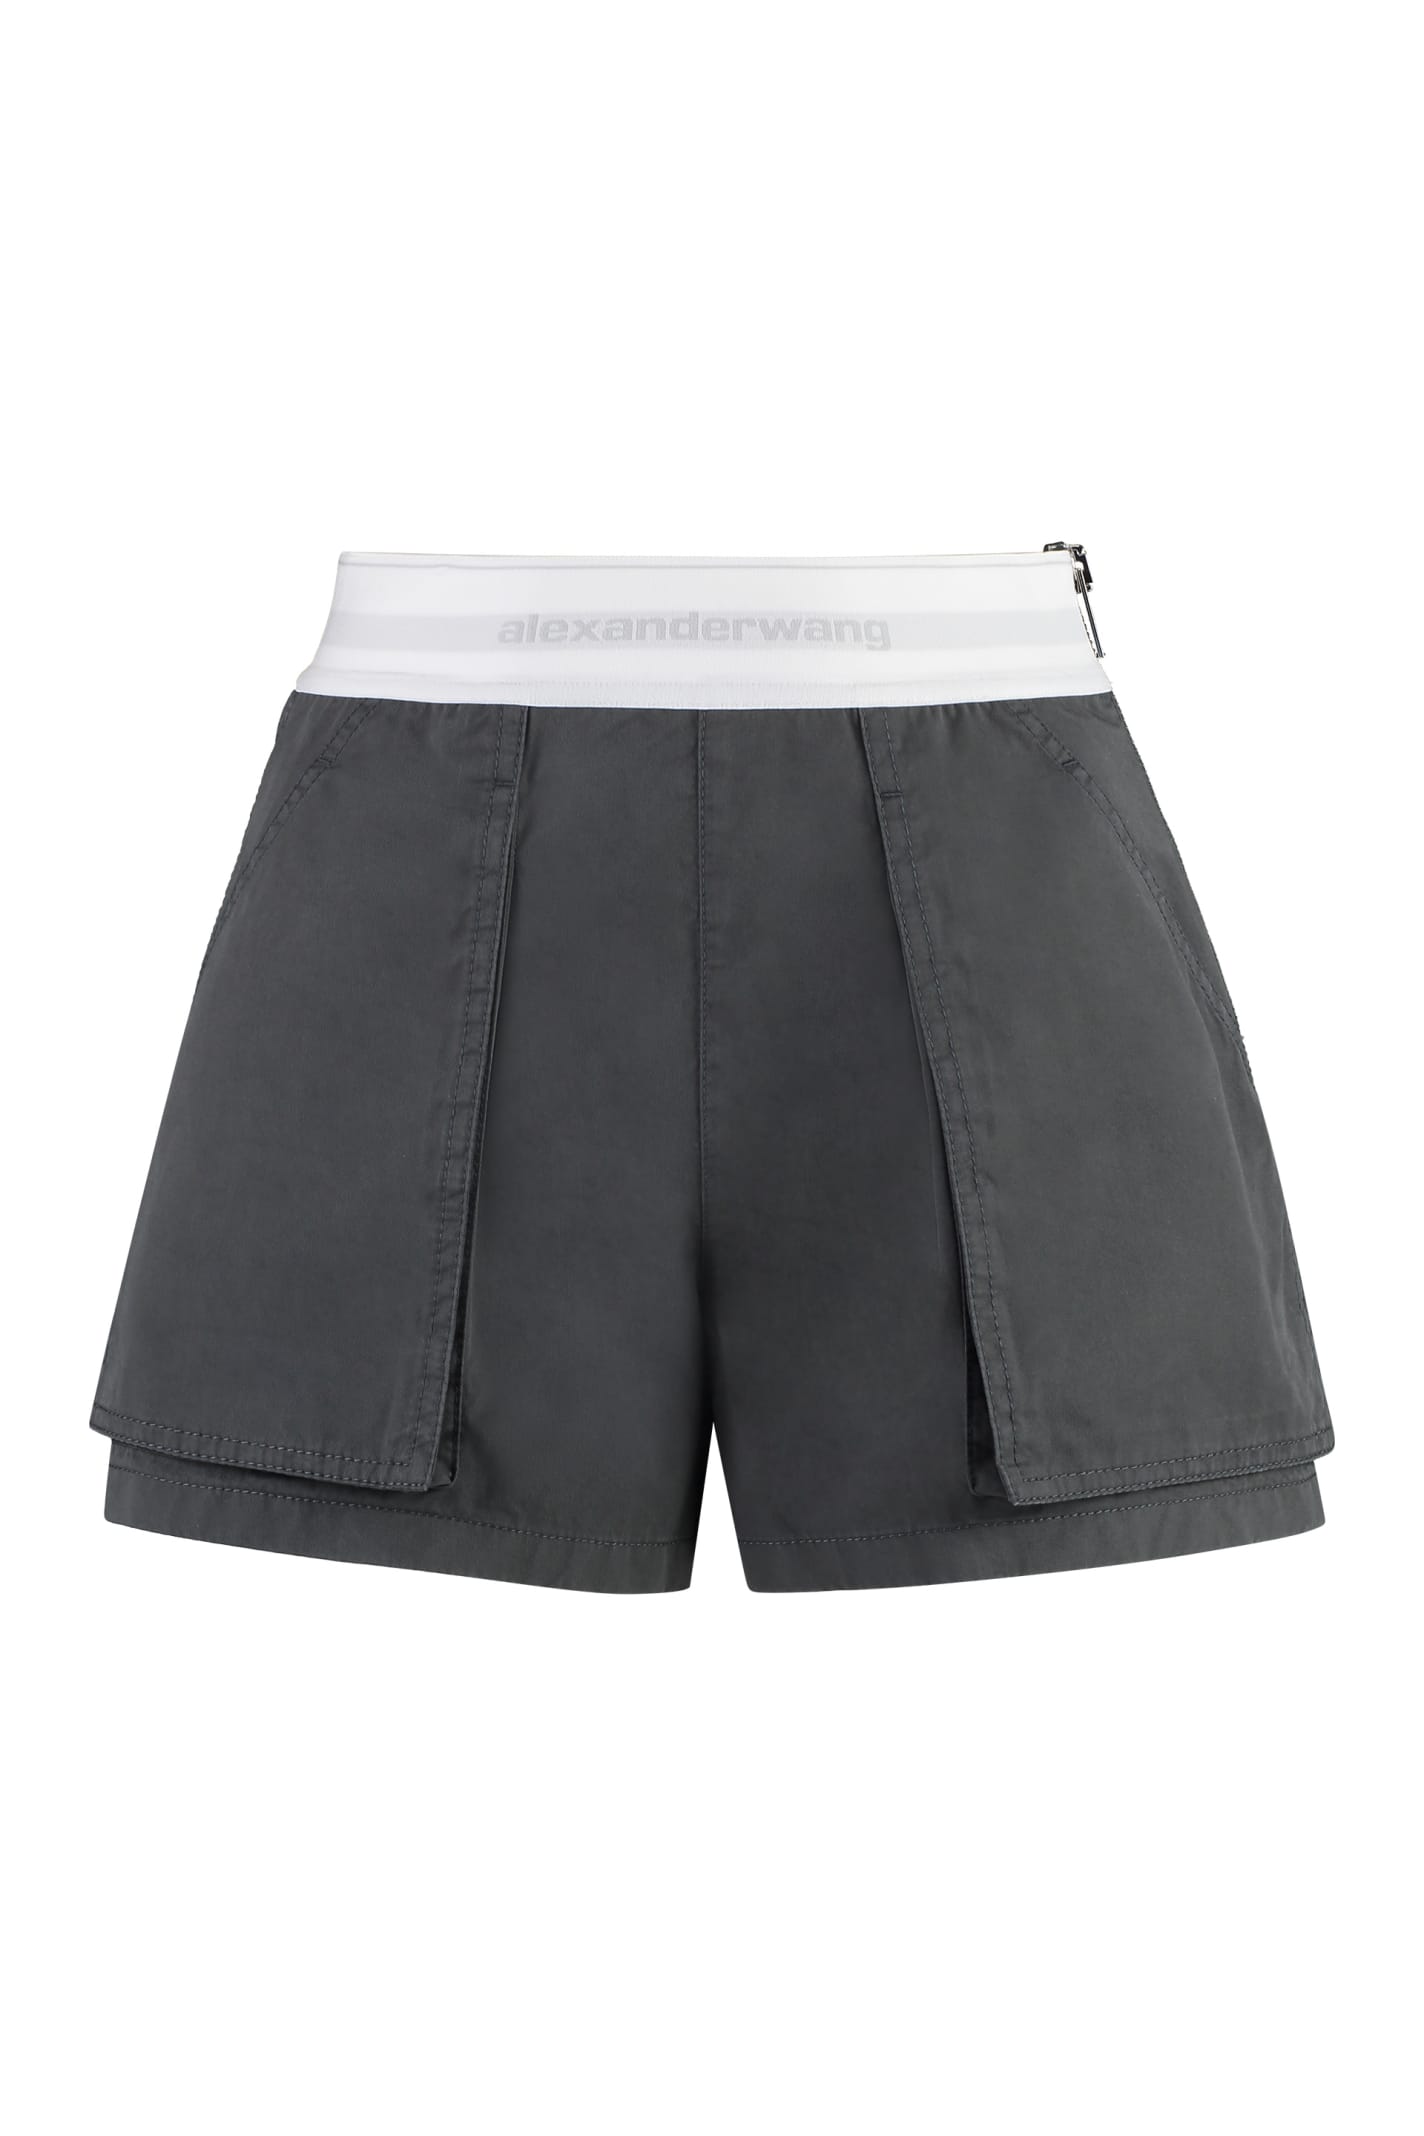 Alexander Wang Rave Cotton Cargo-shorts